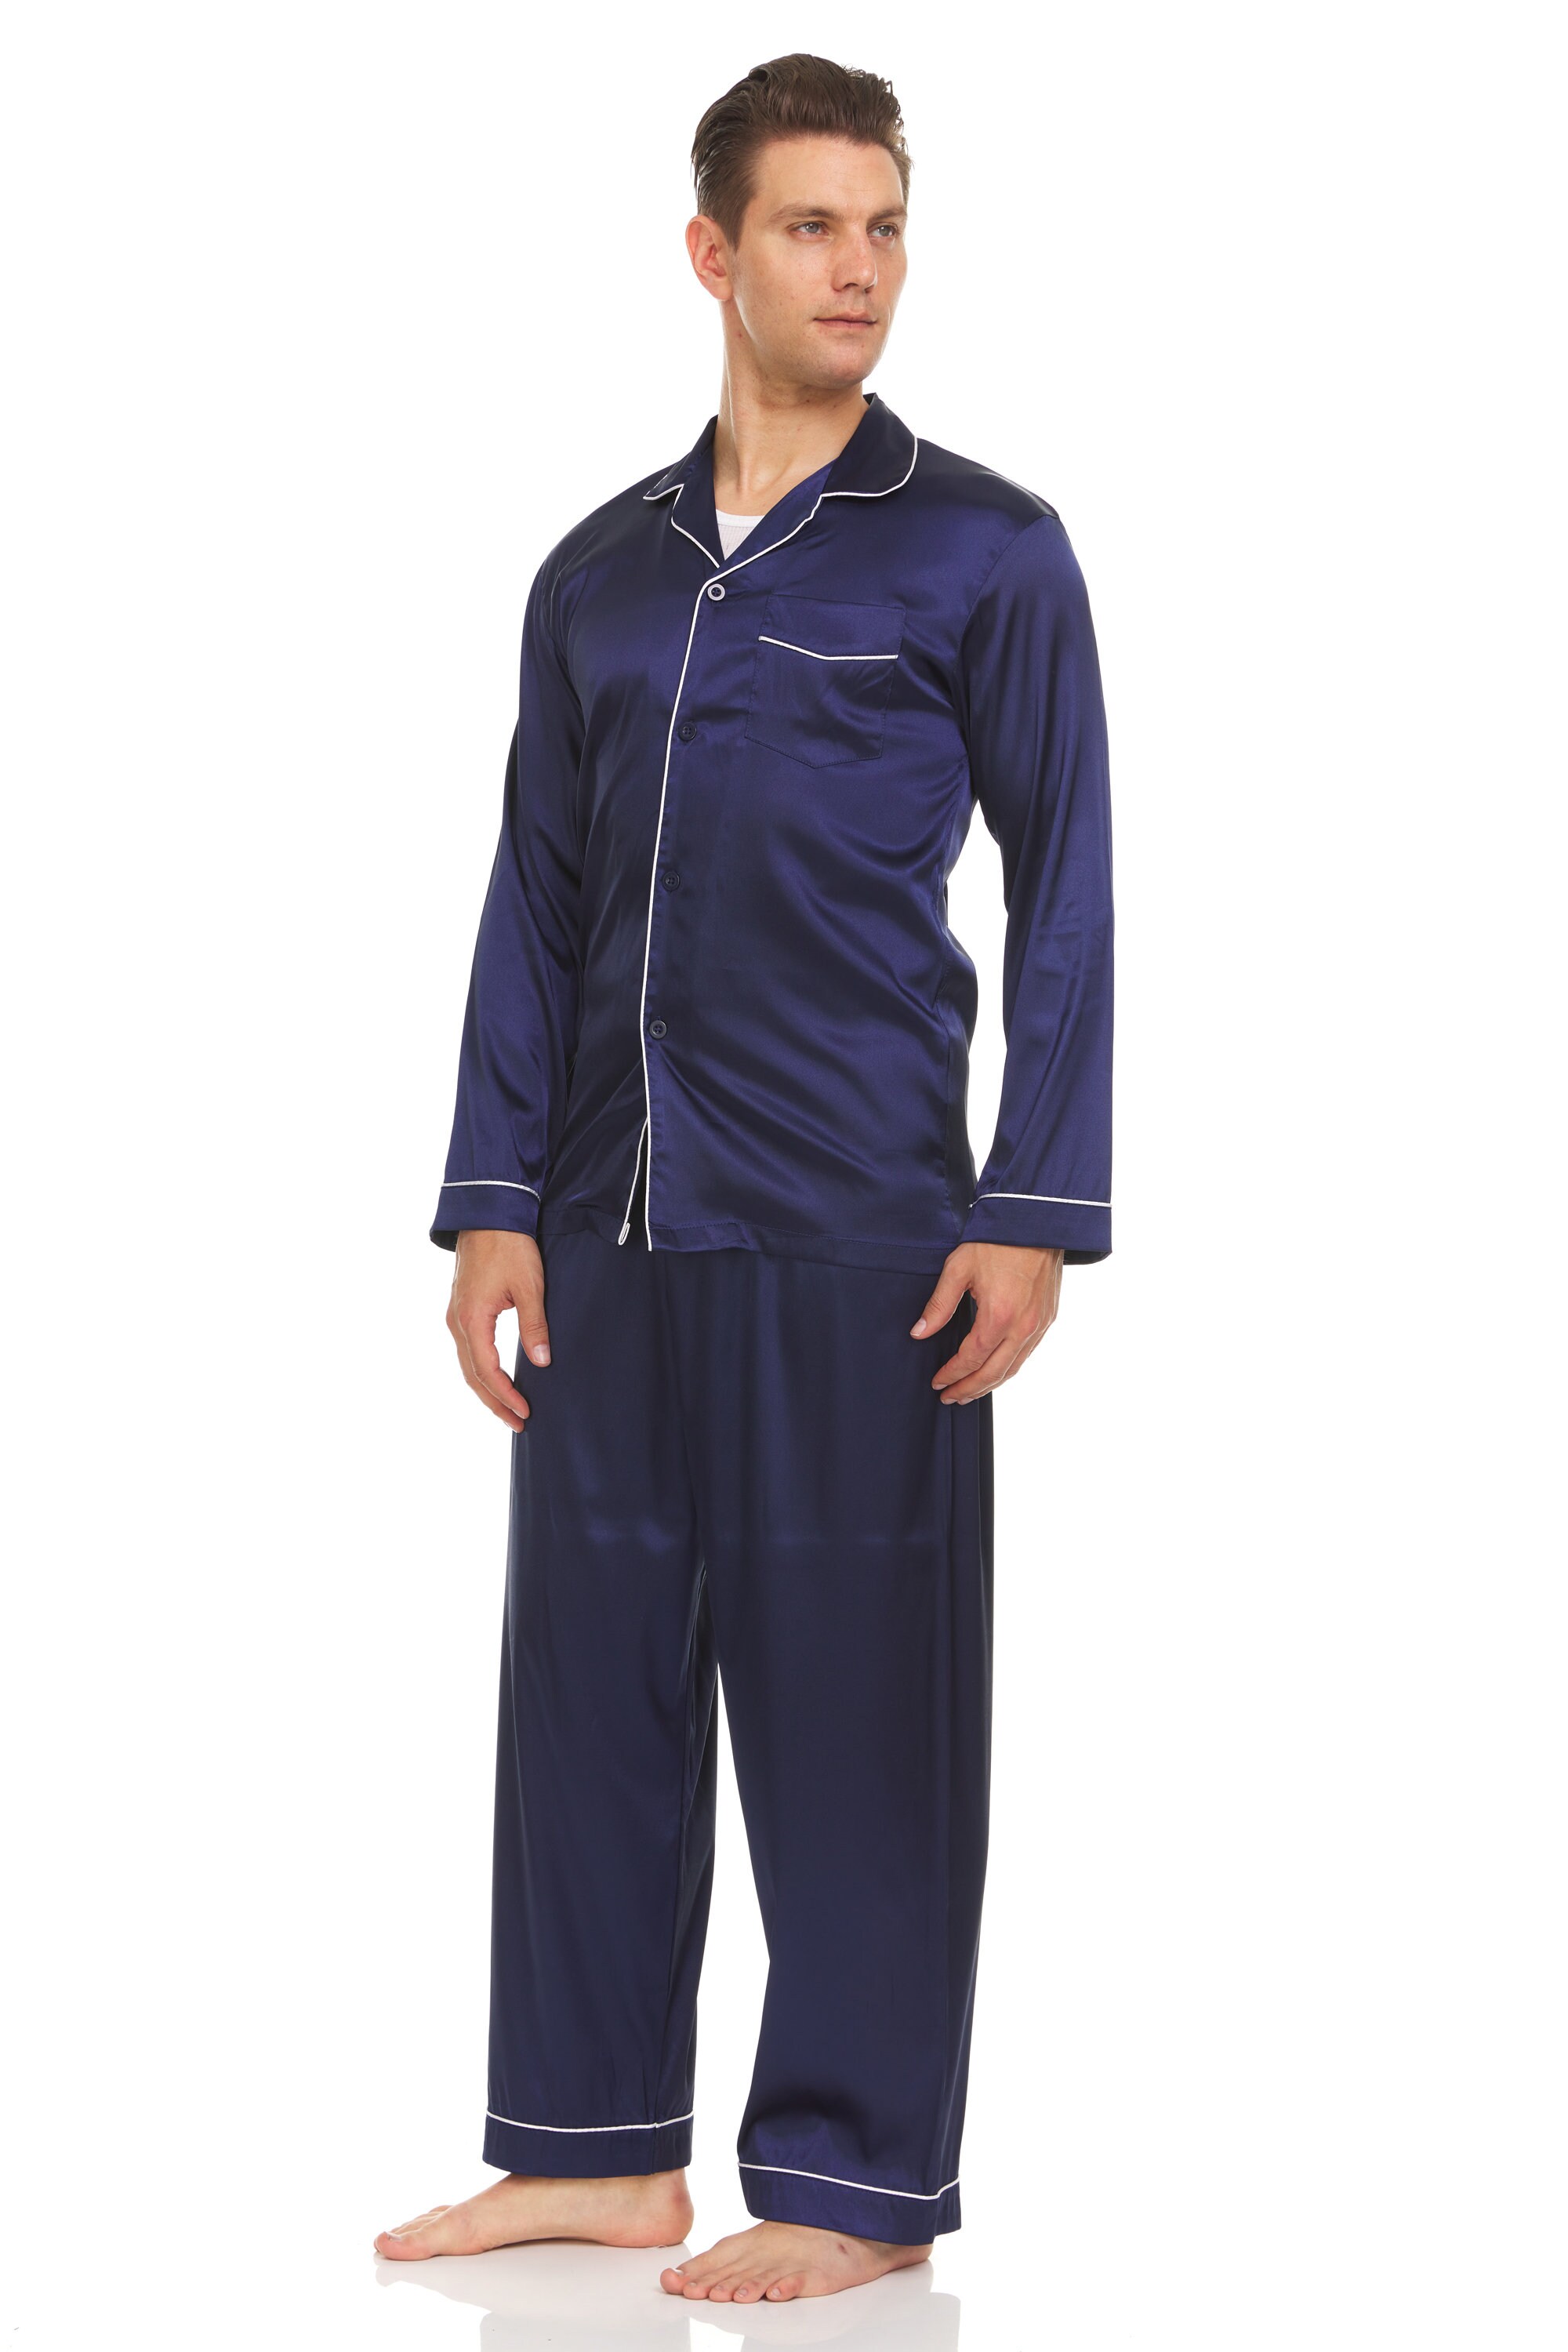 Kleding Herenkleding Pyjamas & Badjassen Sets witte bies marineblauw Heren zijden satijnen pyjama PJ Set boven en onder 